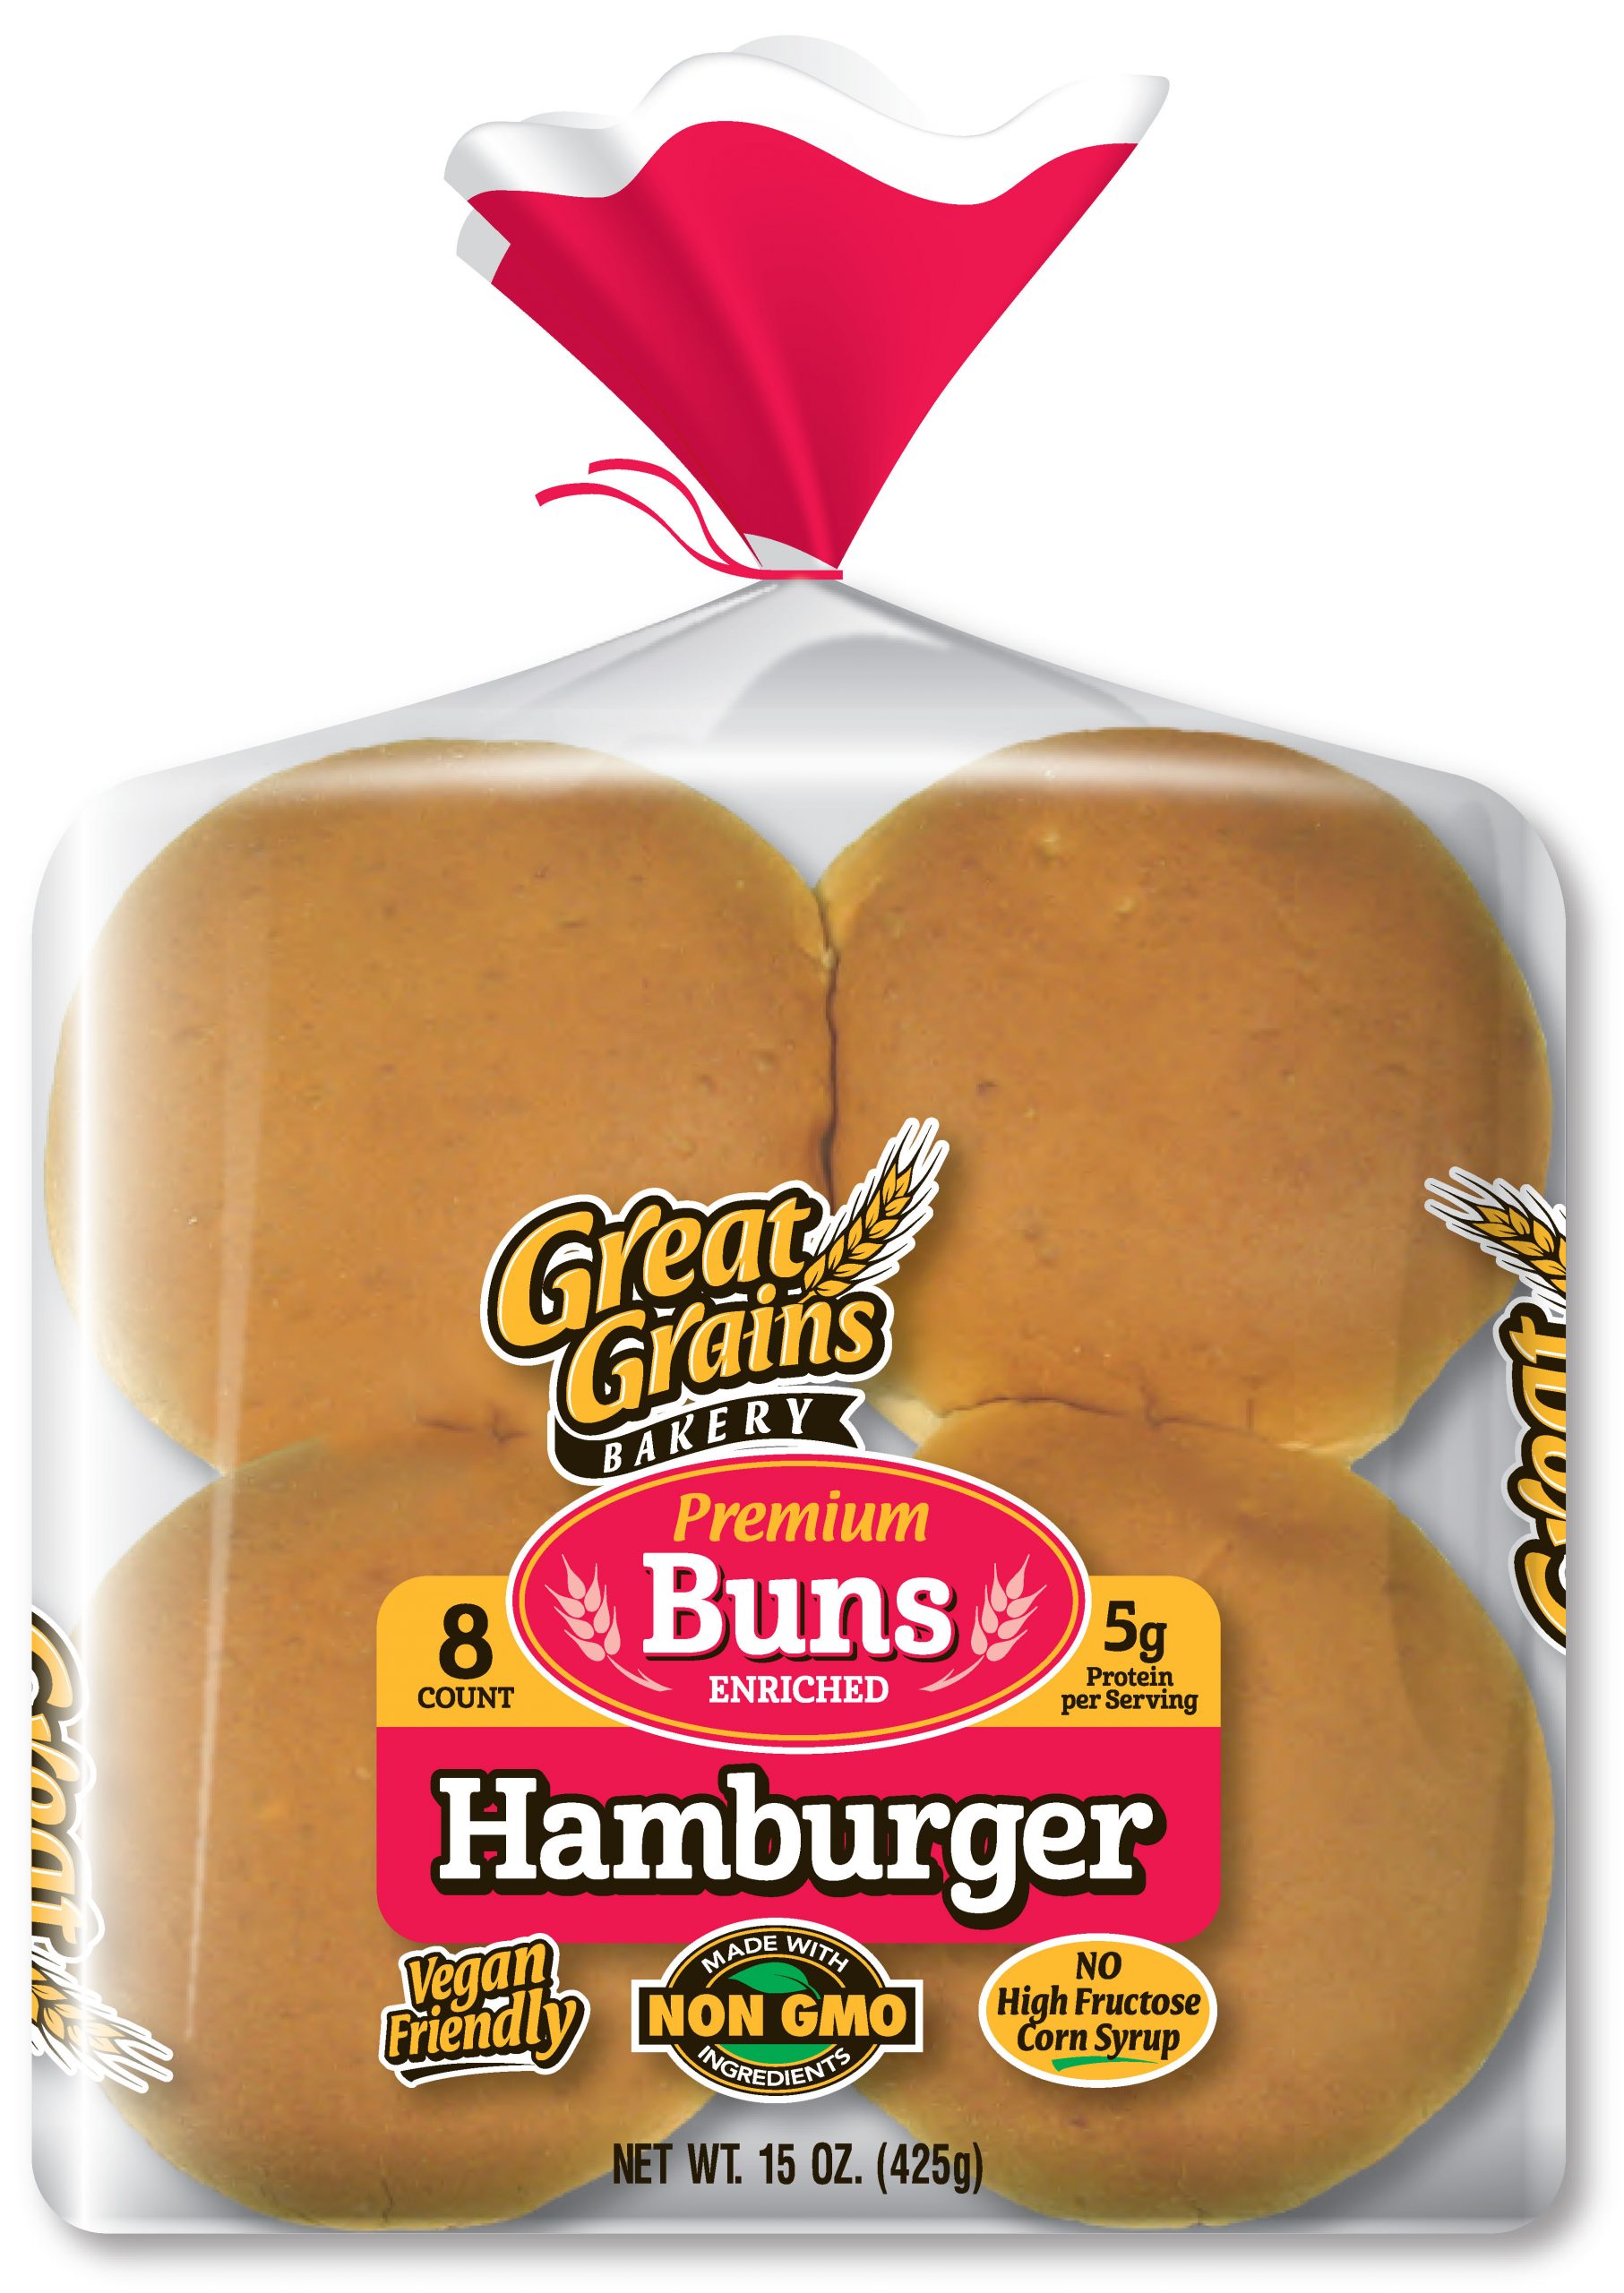 Great Grains Hamburger Buns